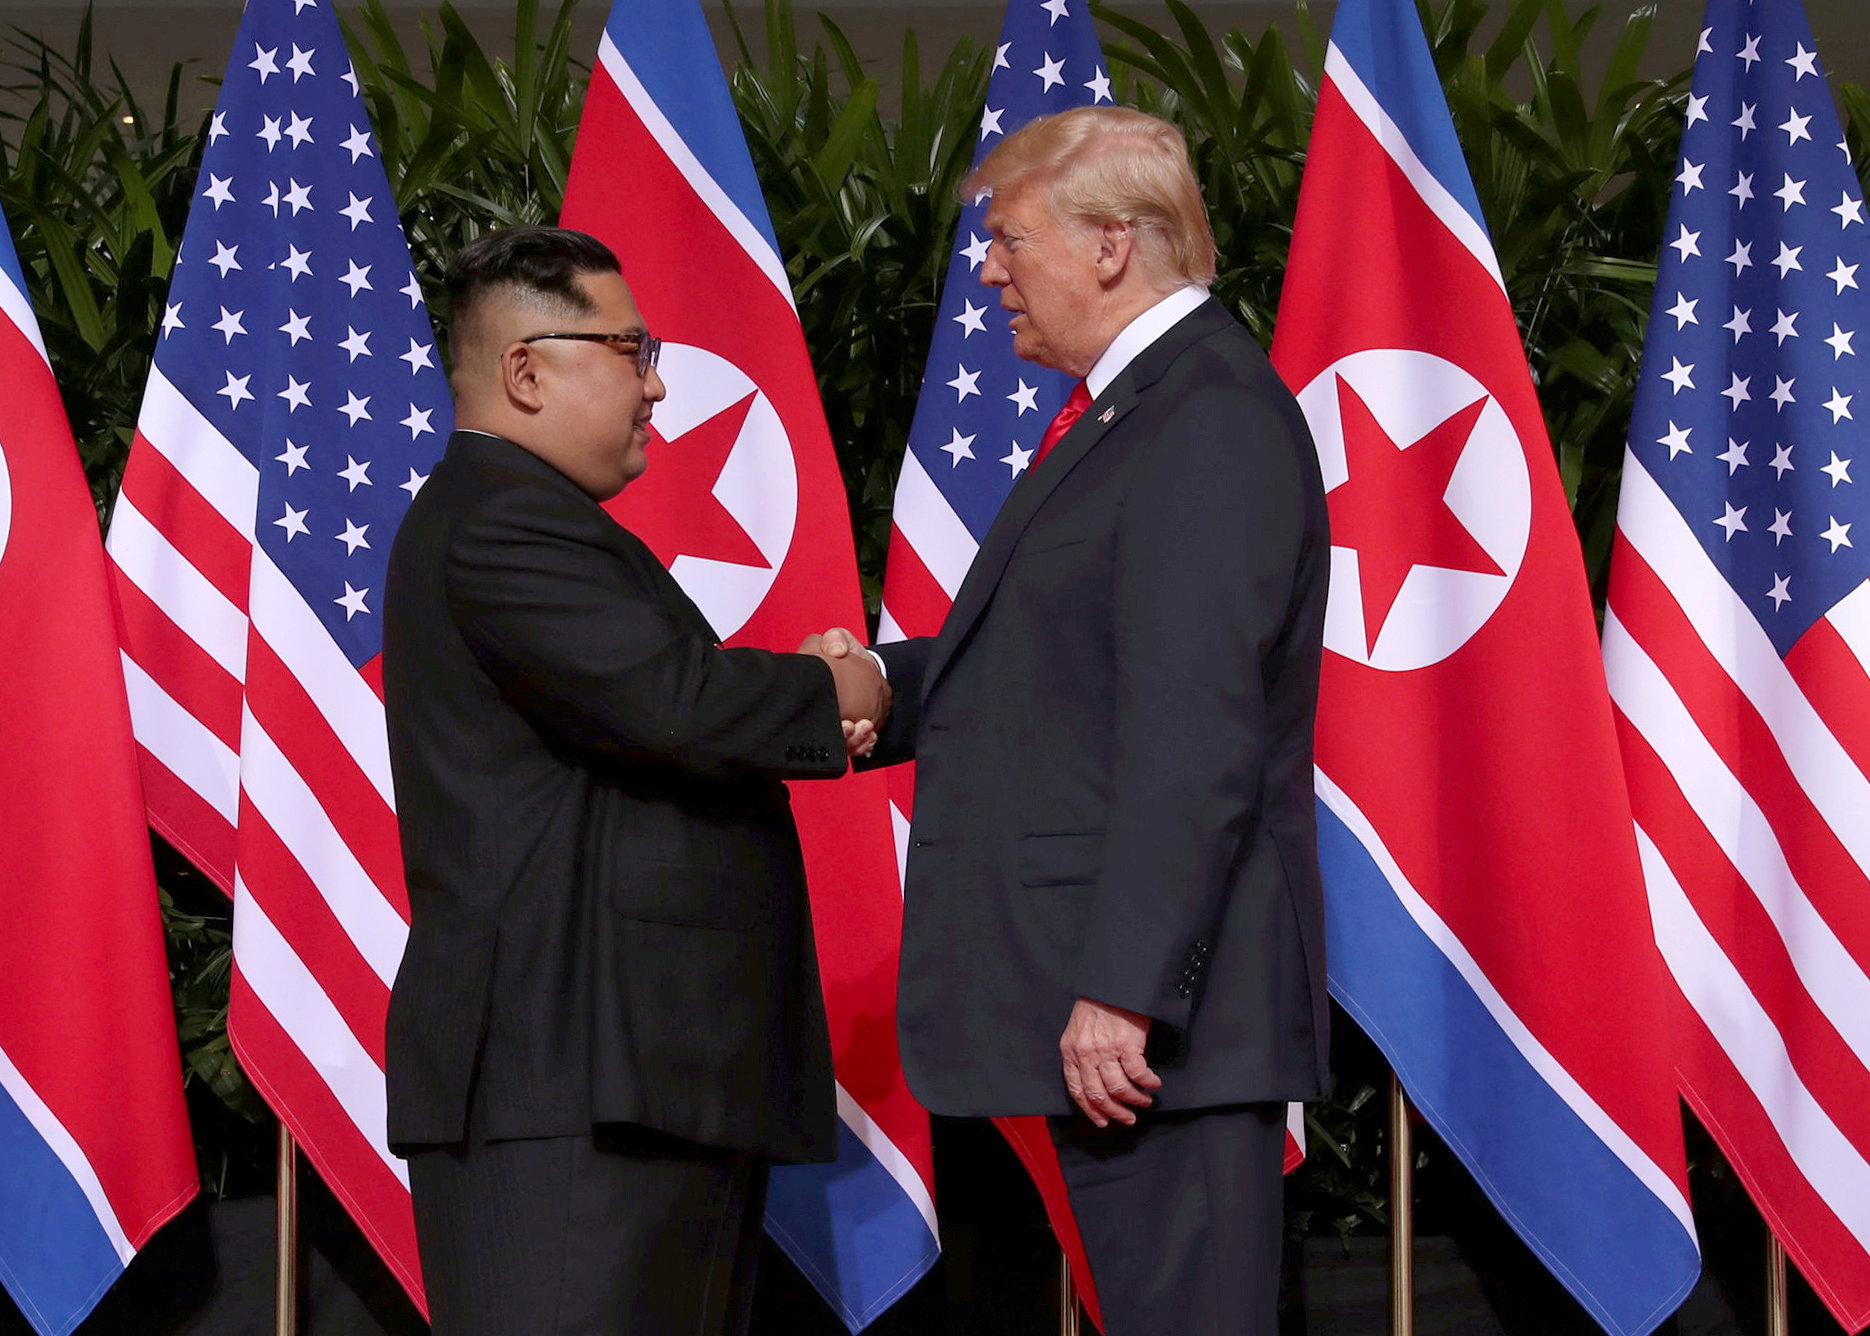 Trump y Kim se reunirán en nueva cumbre a finales de febrero